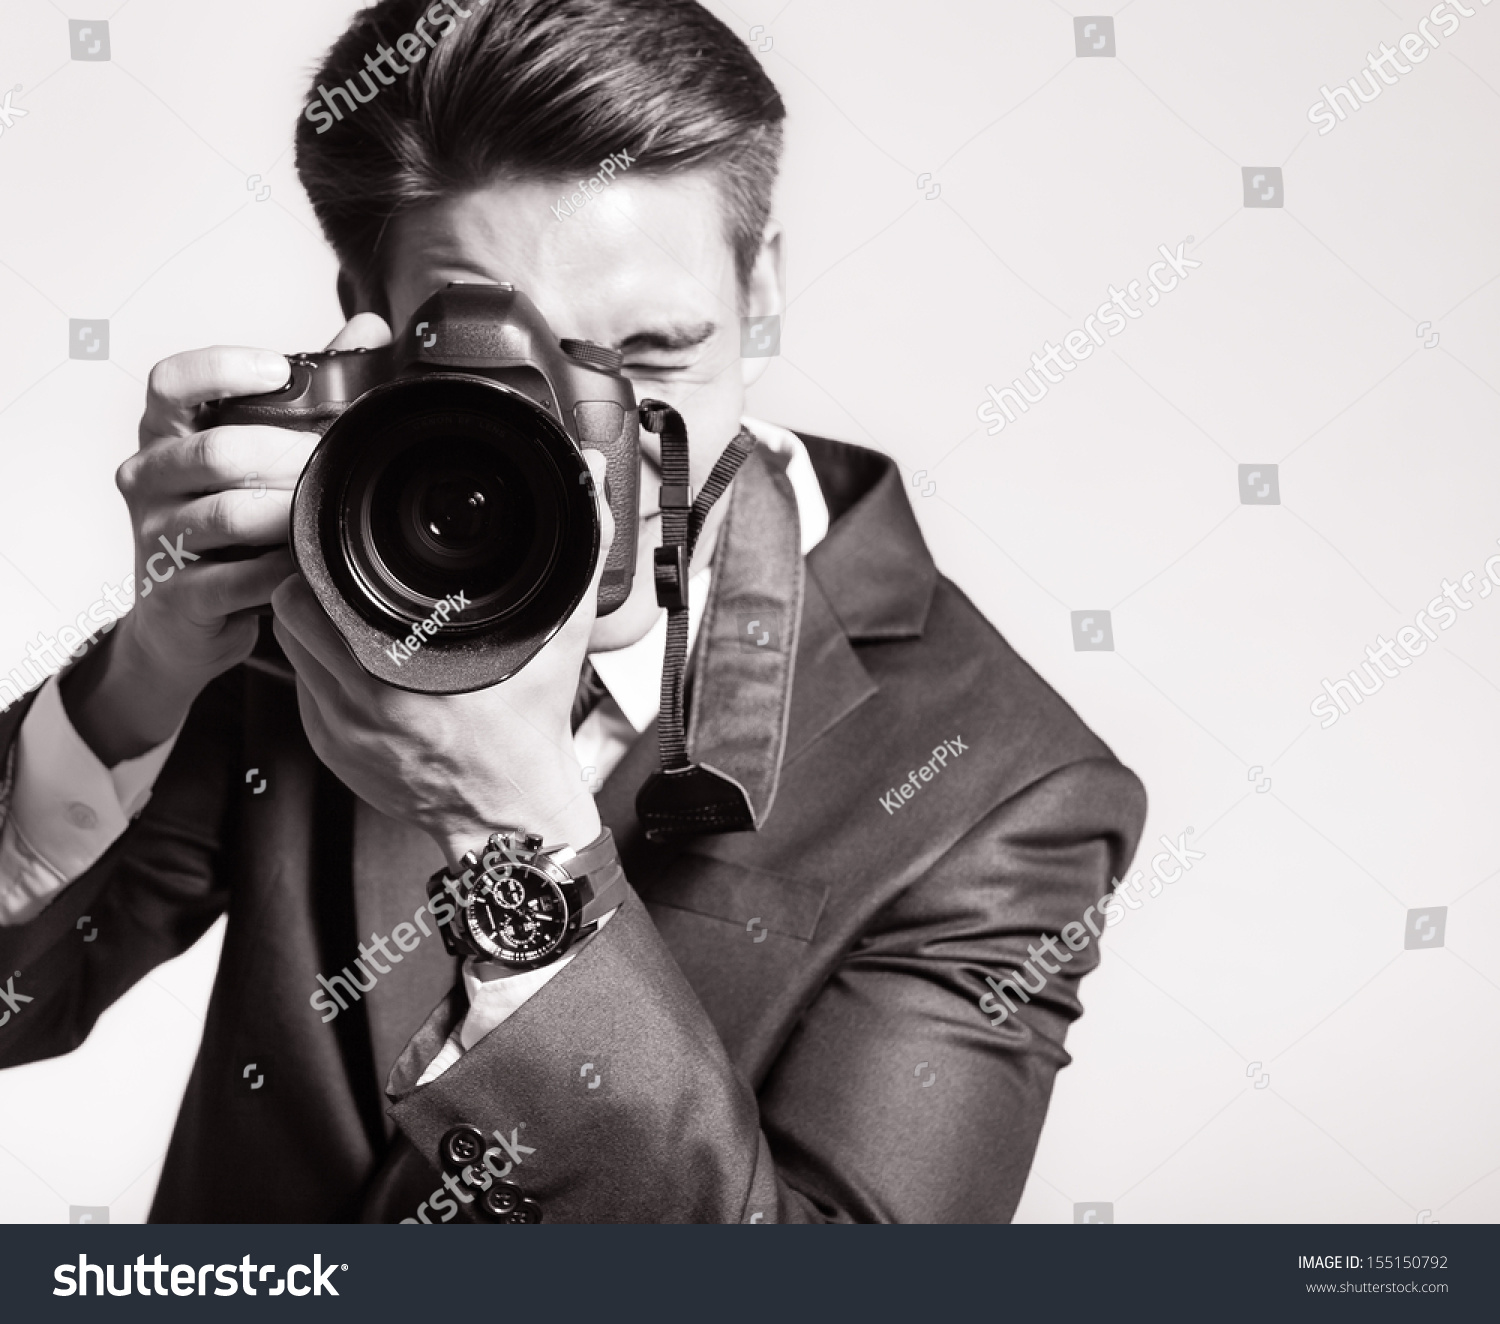 年轻帅哥拿着相机拍照 库存图片. 图片 包括有 衣物, 方向, 藏品, 照相机, 姿态, 吸引力, 女演员 - 179453719